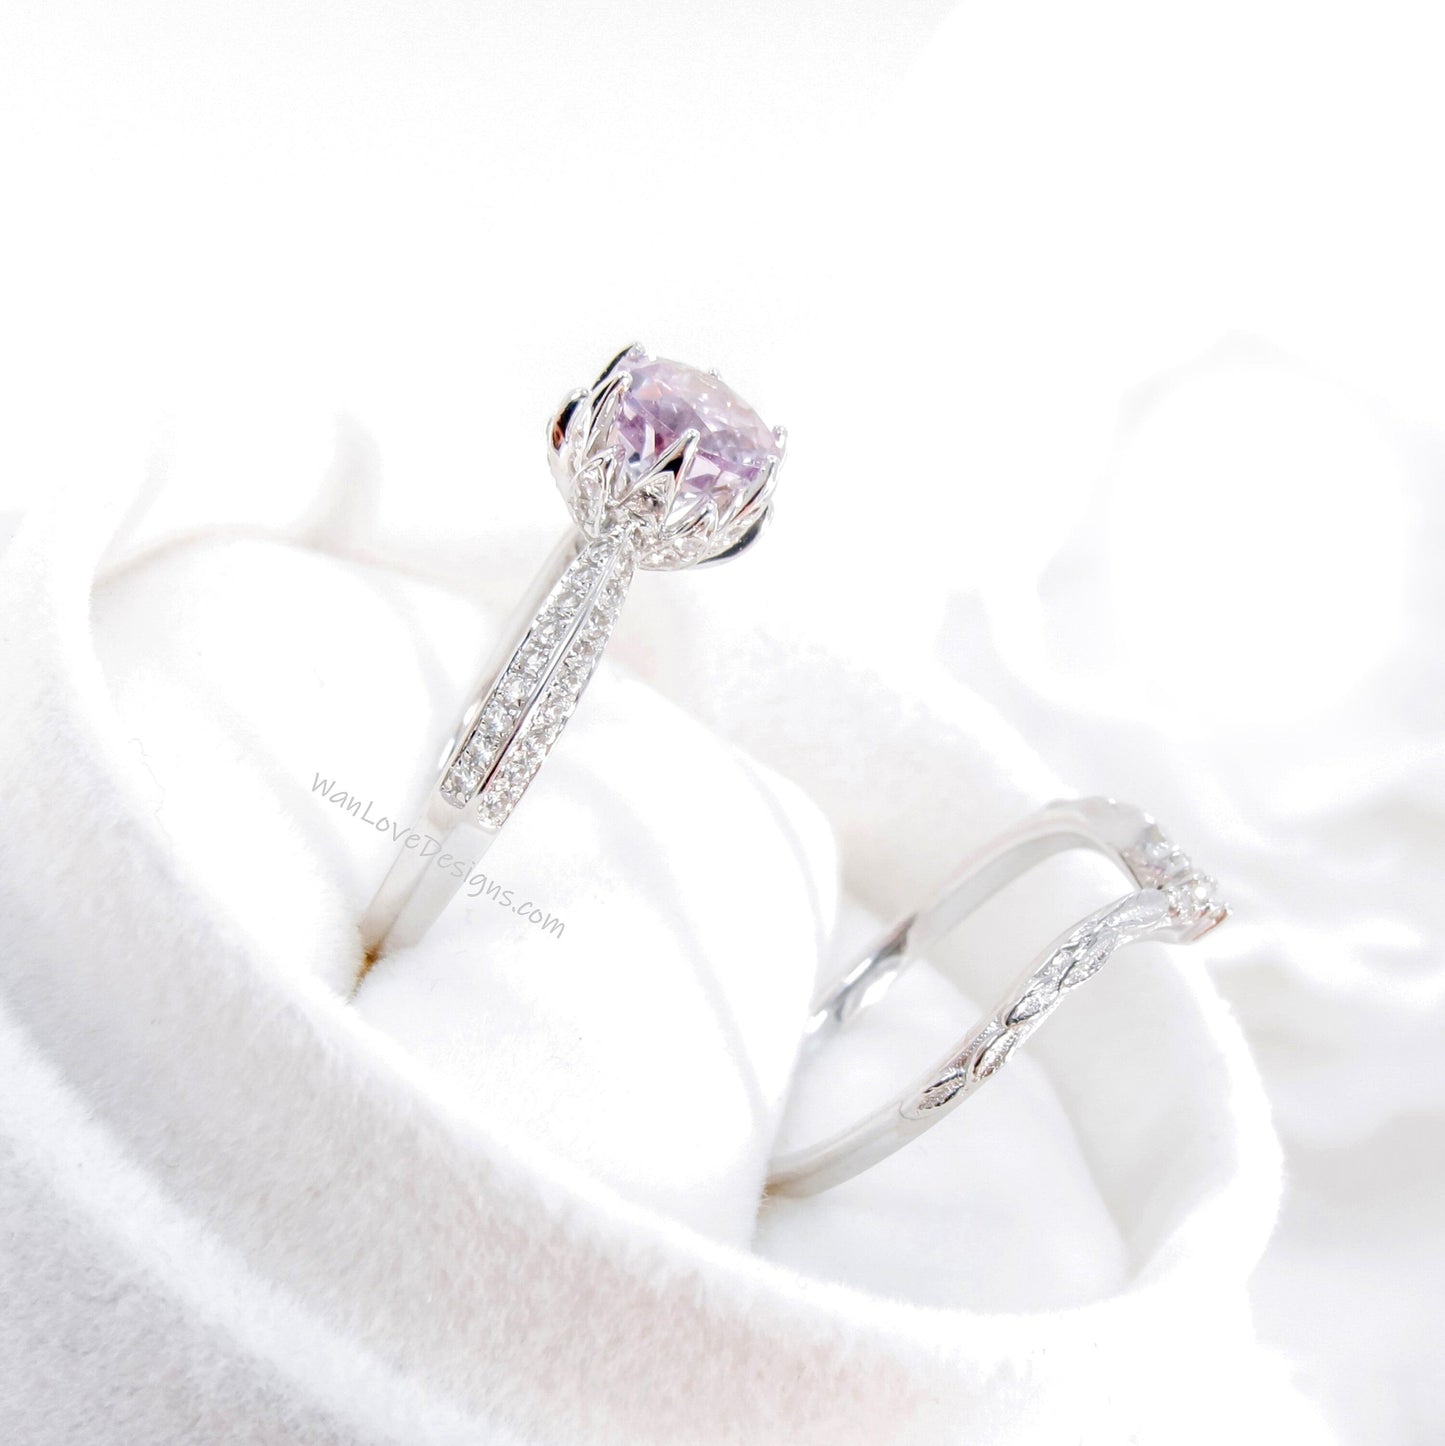 Lotus | 14K Gold Salt & Pepper Diamond Lotus Ring Set | 14k Flower Ring | Lotus Flower Ring Set | Curved Leaf Wedding Band | Bridal Gift Wan Love Designs